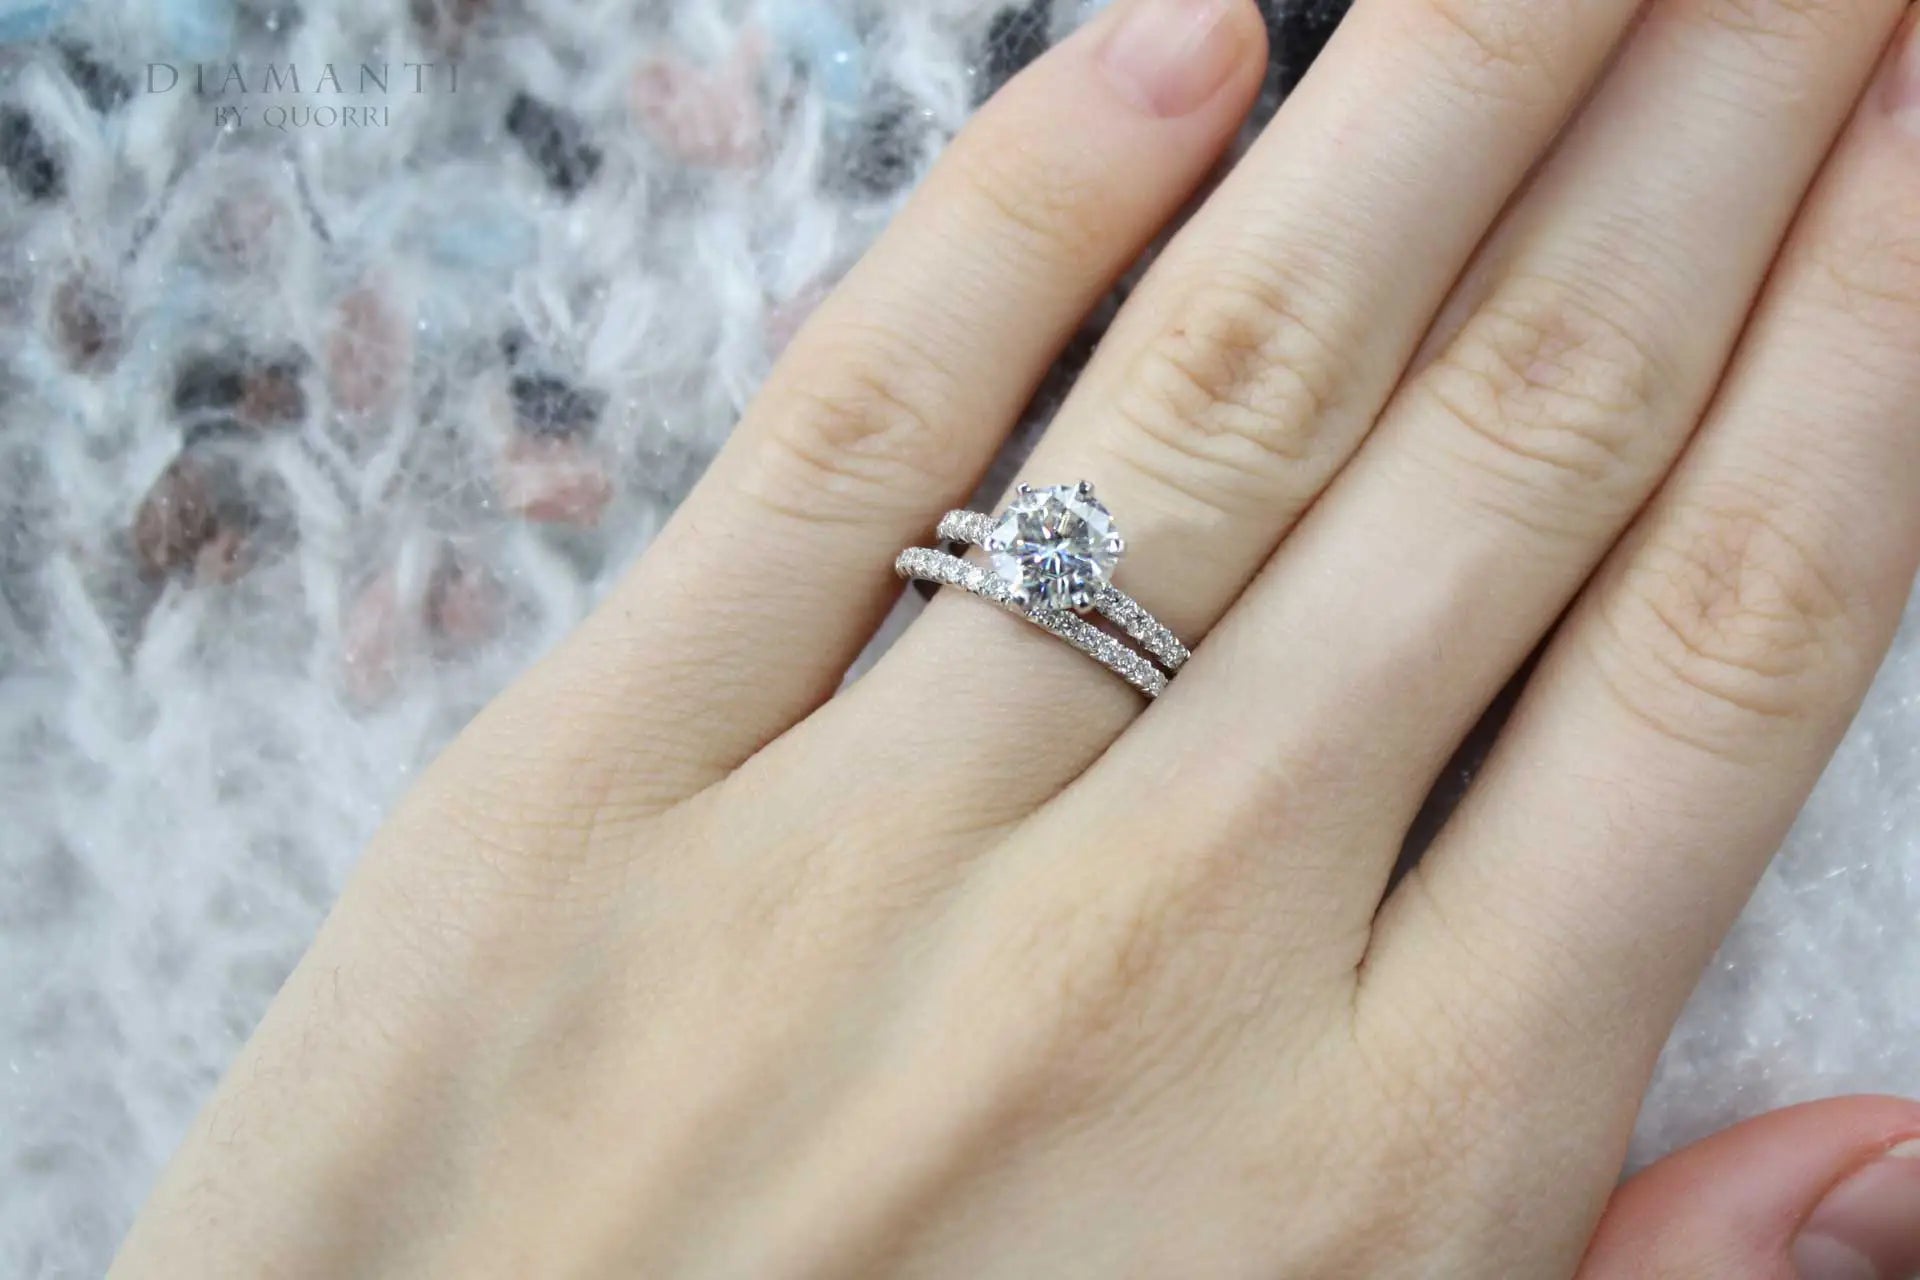 plaitnum affordable designer round lab diamond wedding ring and band Quorri